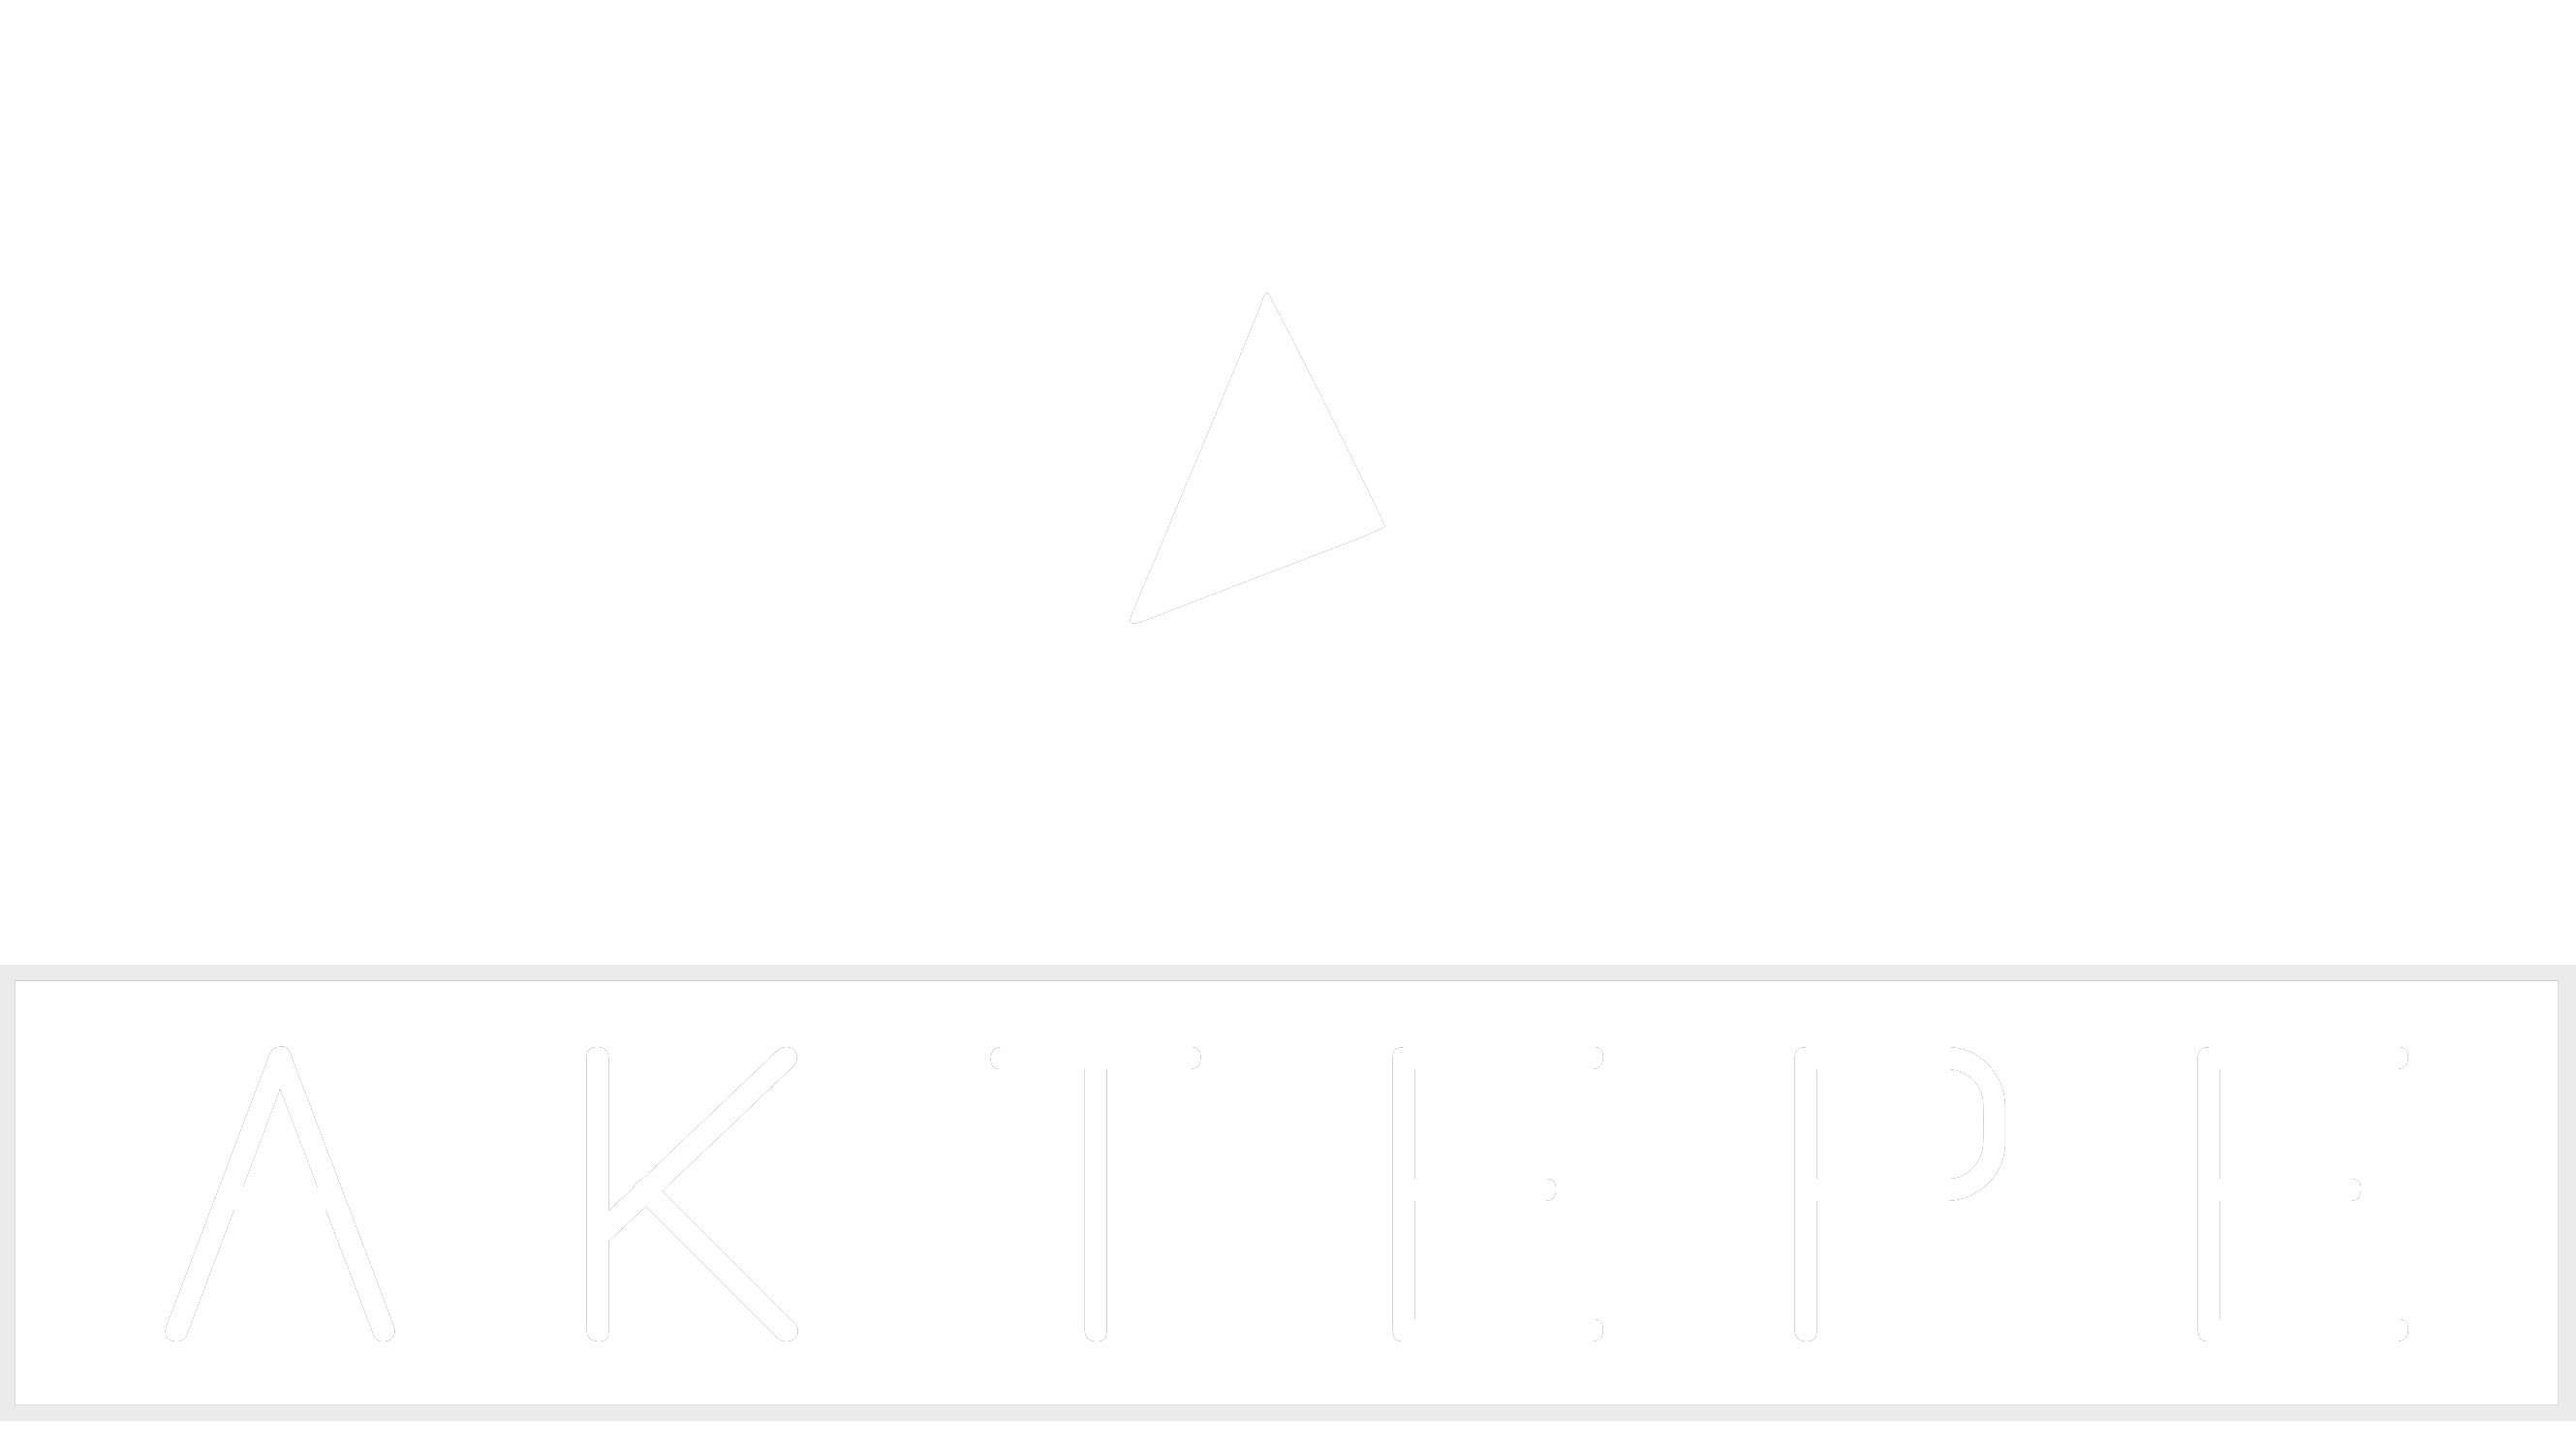 Kia - Aktepe Shop - Oto Müzik Görüntü Navigasyon Sistemleri ve Teyp Çerçevesi Satış Merkezi